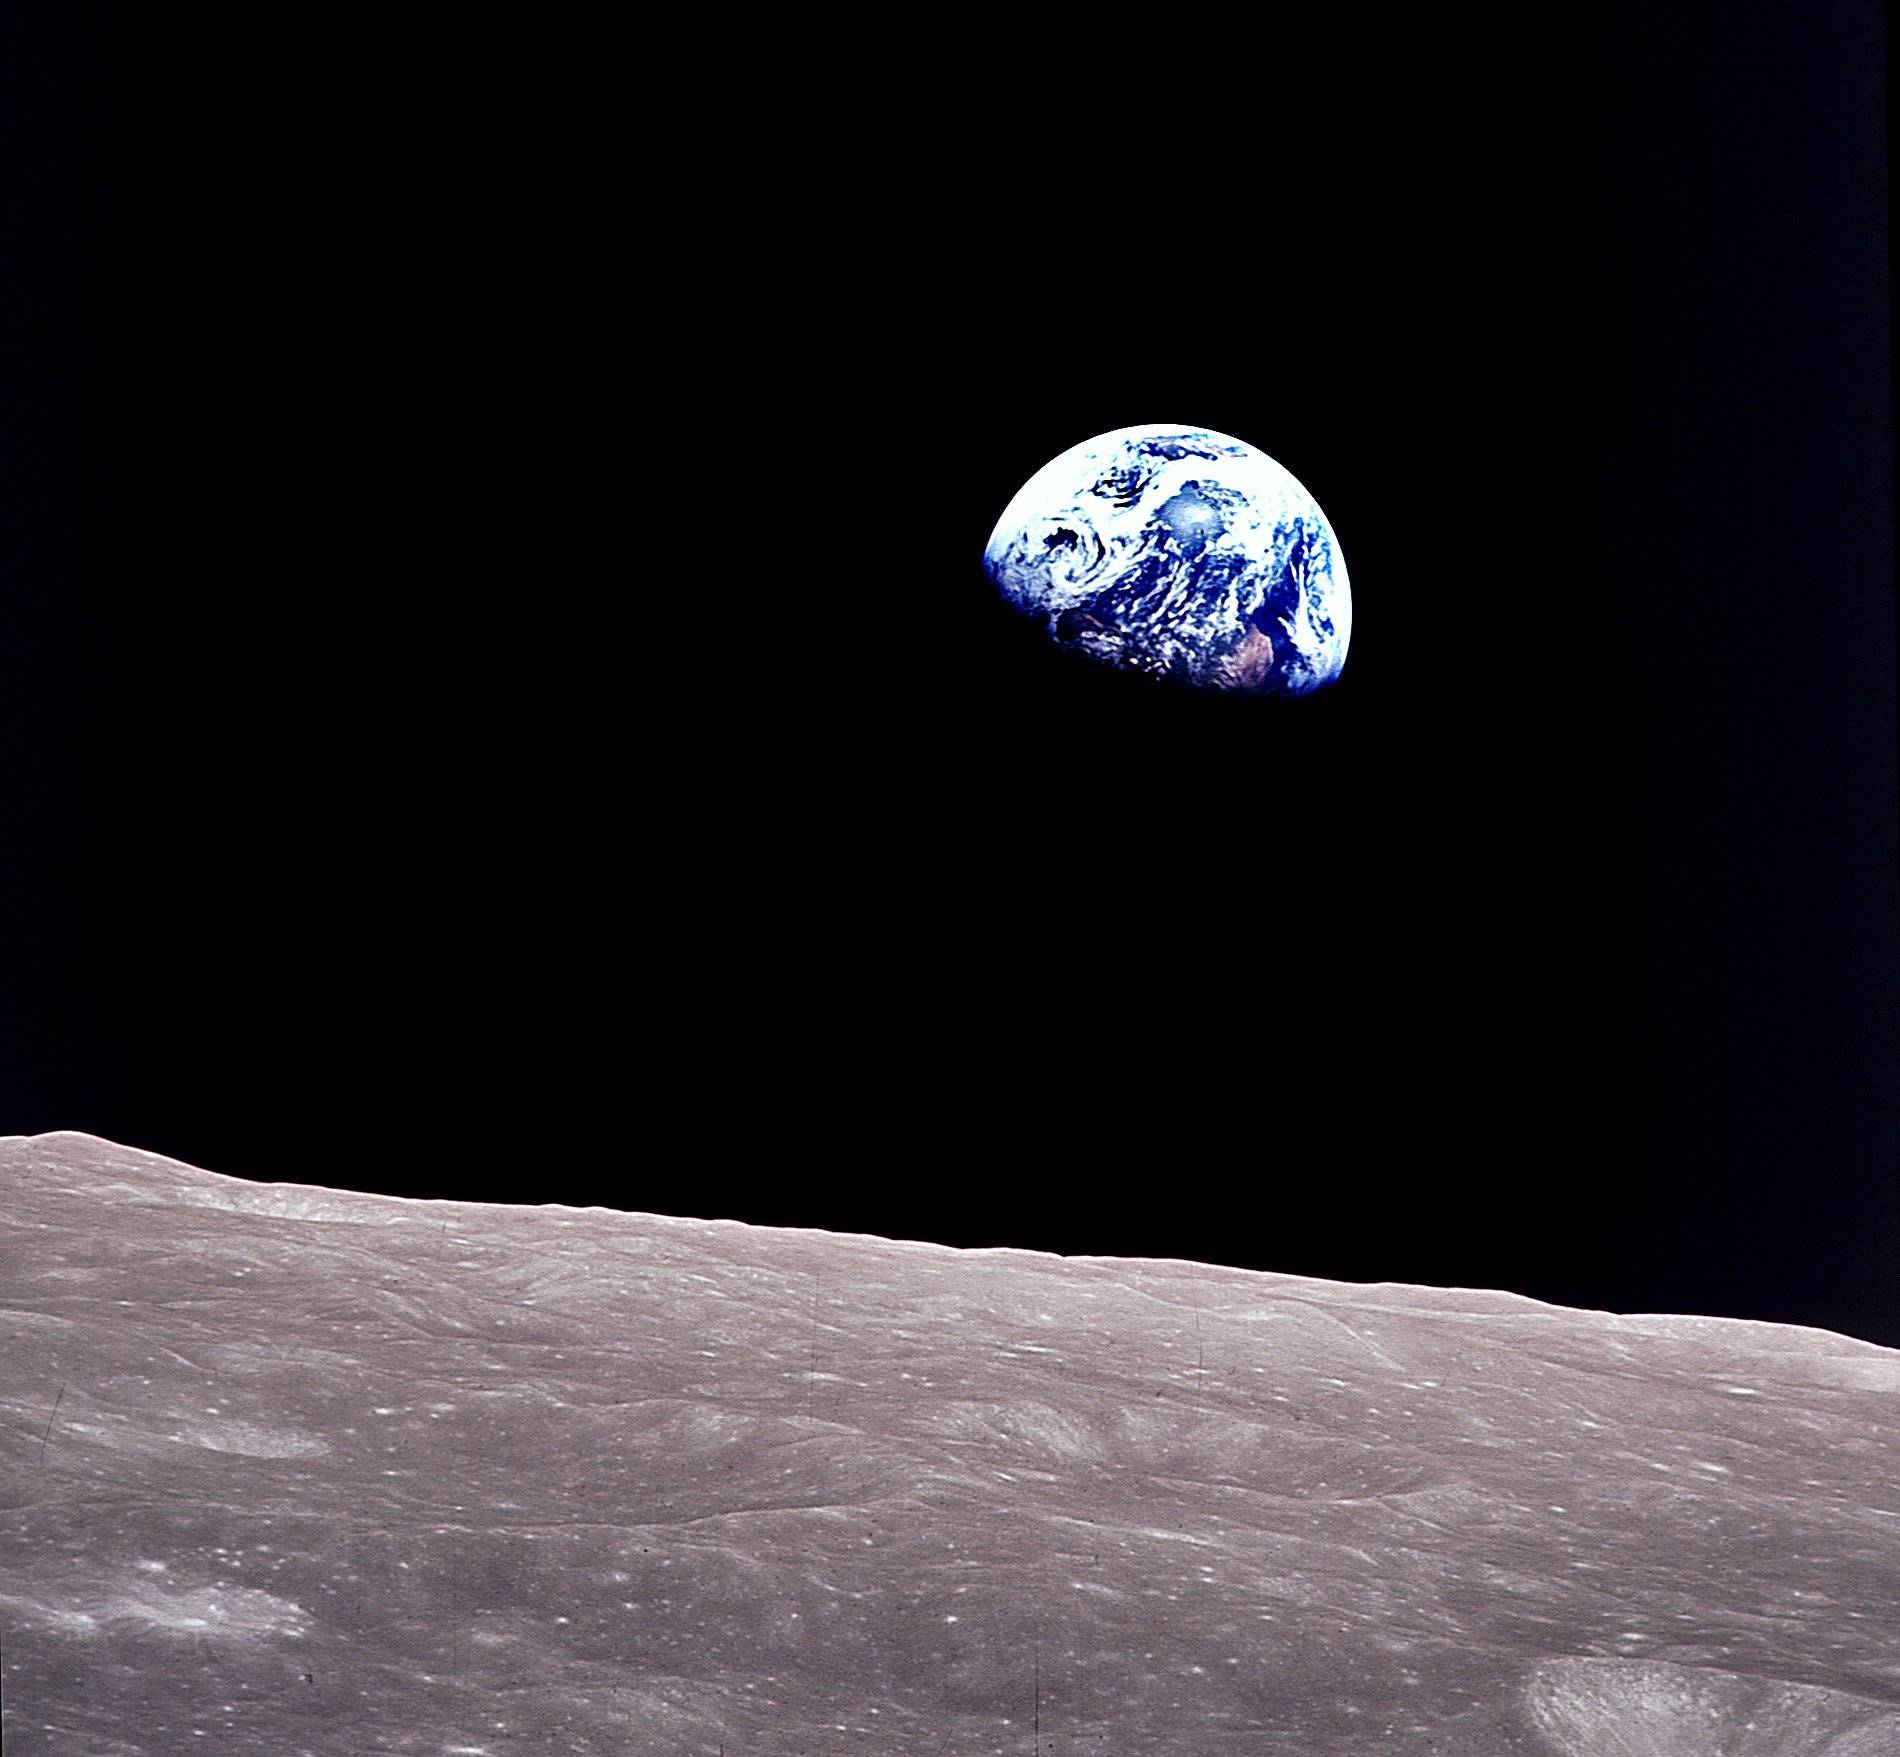 Błękitna planeta (Ziemia) nad szarą powierzchnią Księżyca (słynna fotografia Ziemi zrobiona przez załogę statku Apollo 8 w 1968 r.)